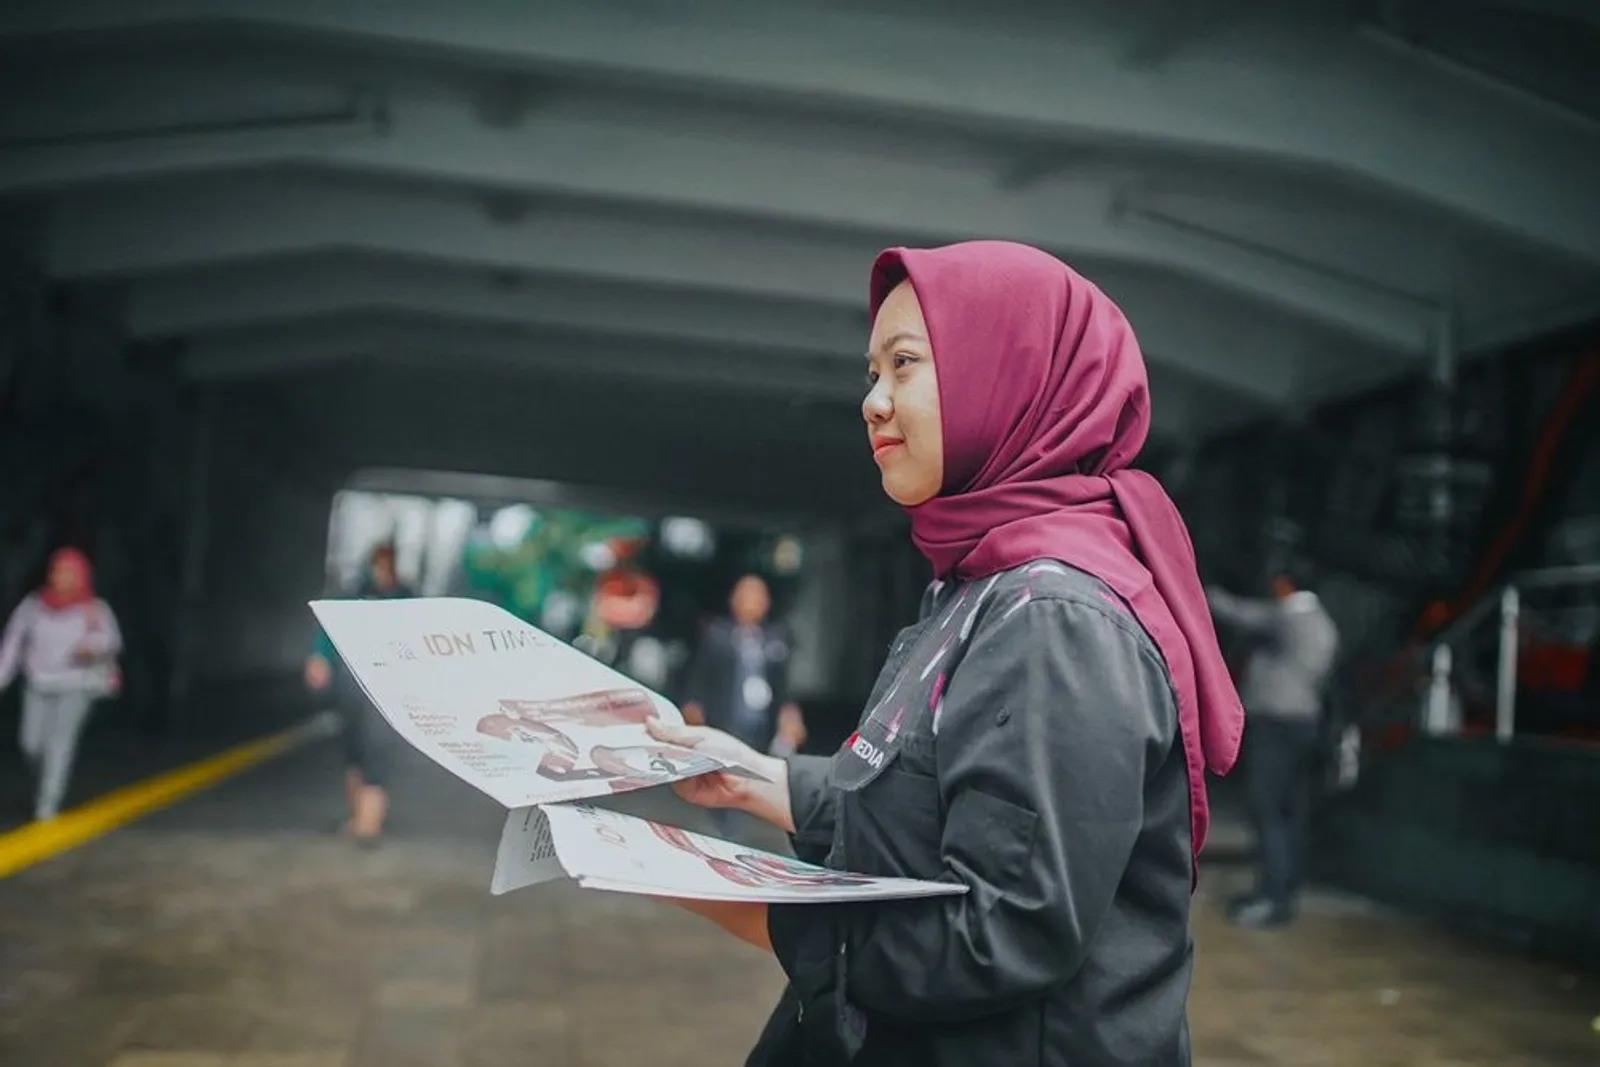 Lihat Bagaimana Indonesia di Tahun 2045 Lewat #KoranIDNTimes